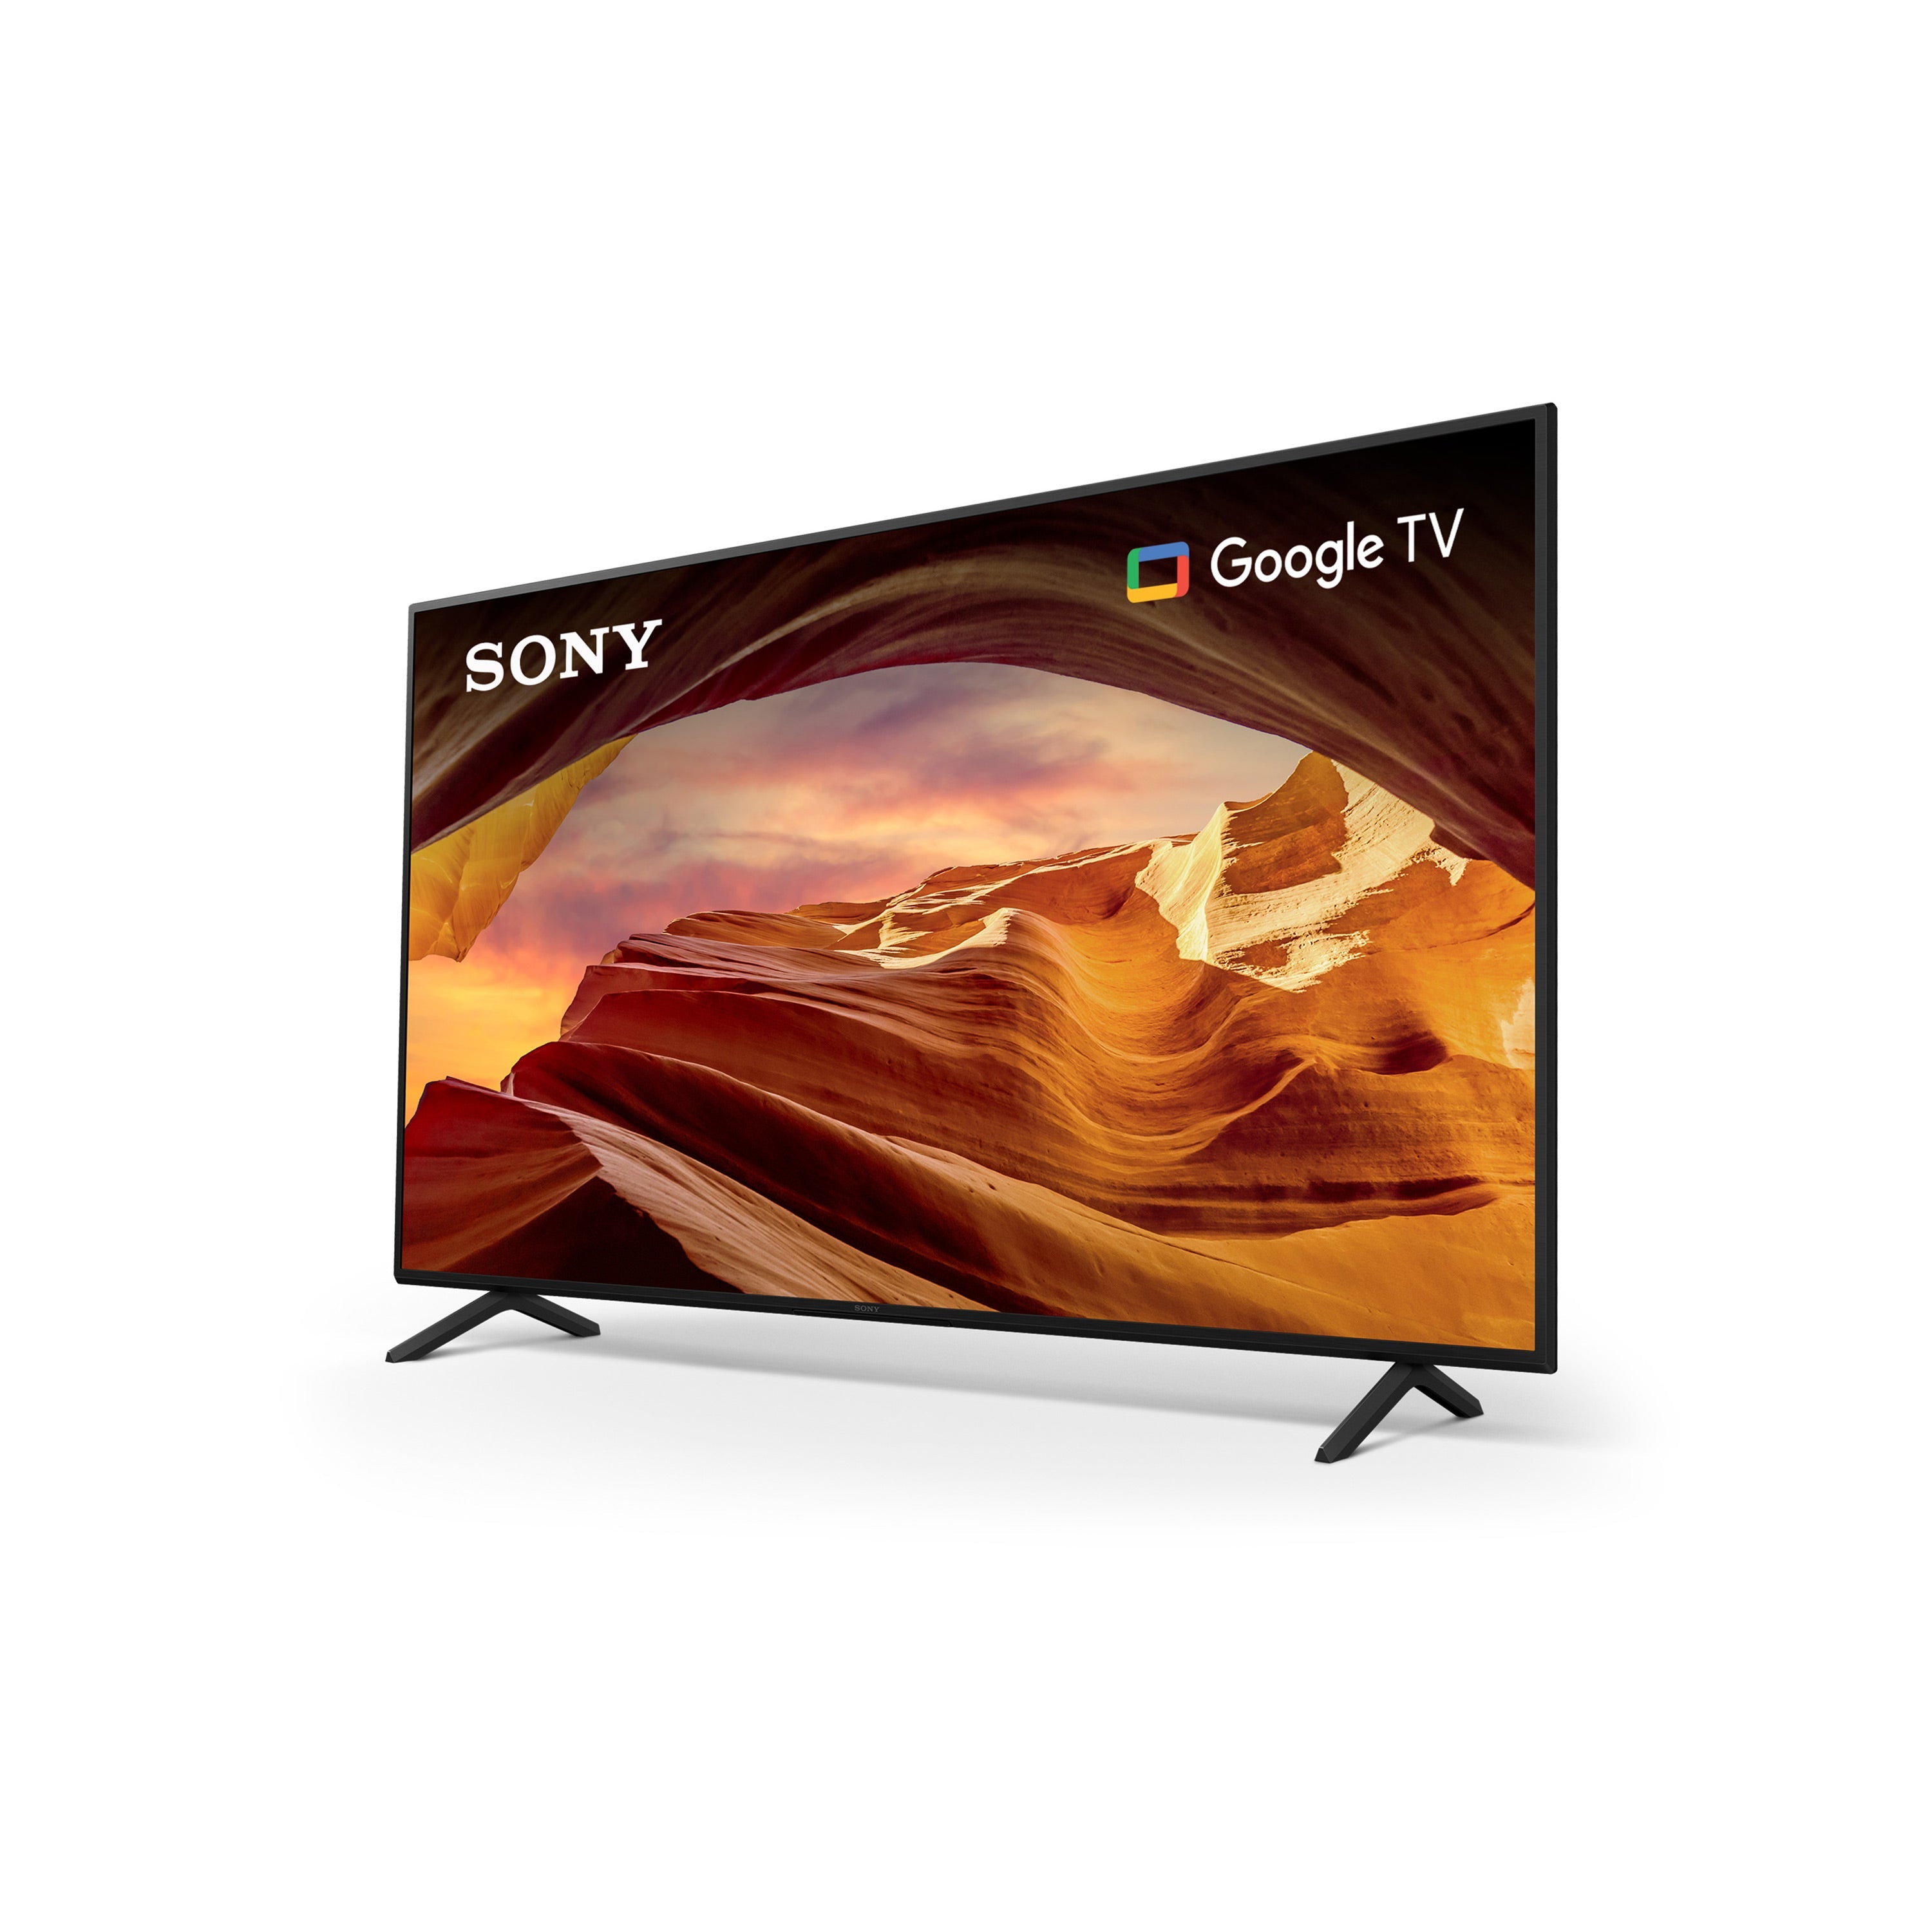 Sony X77L LED | 4K HDR TV | Smart TV (Google TV)